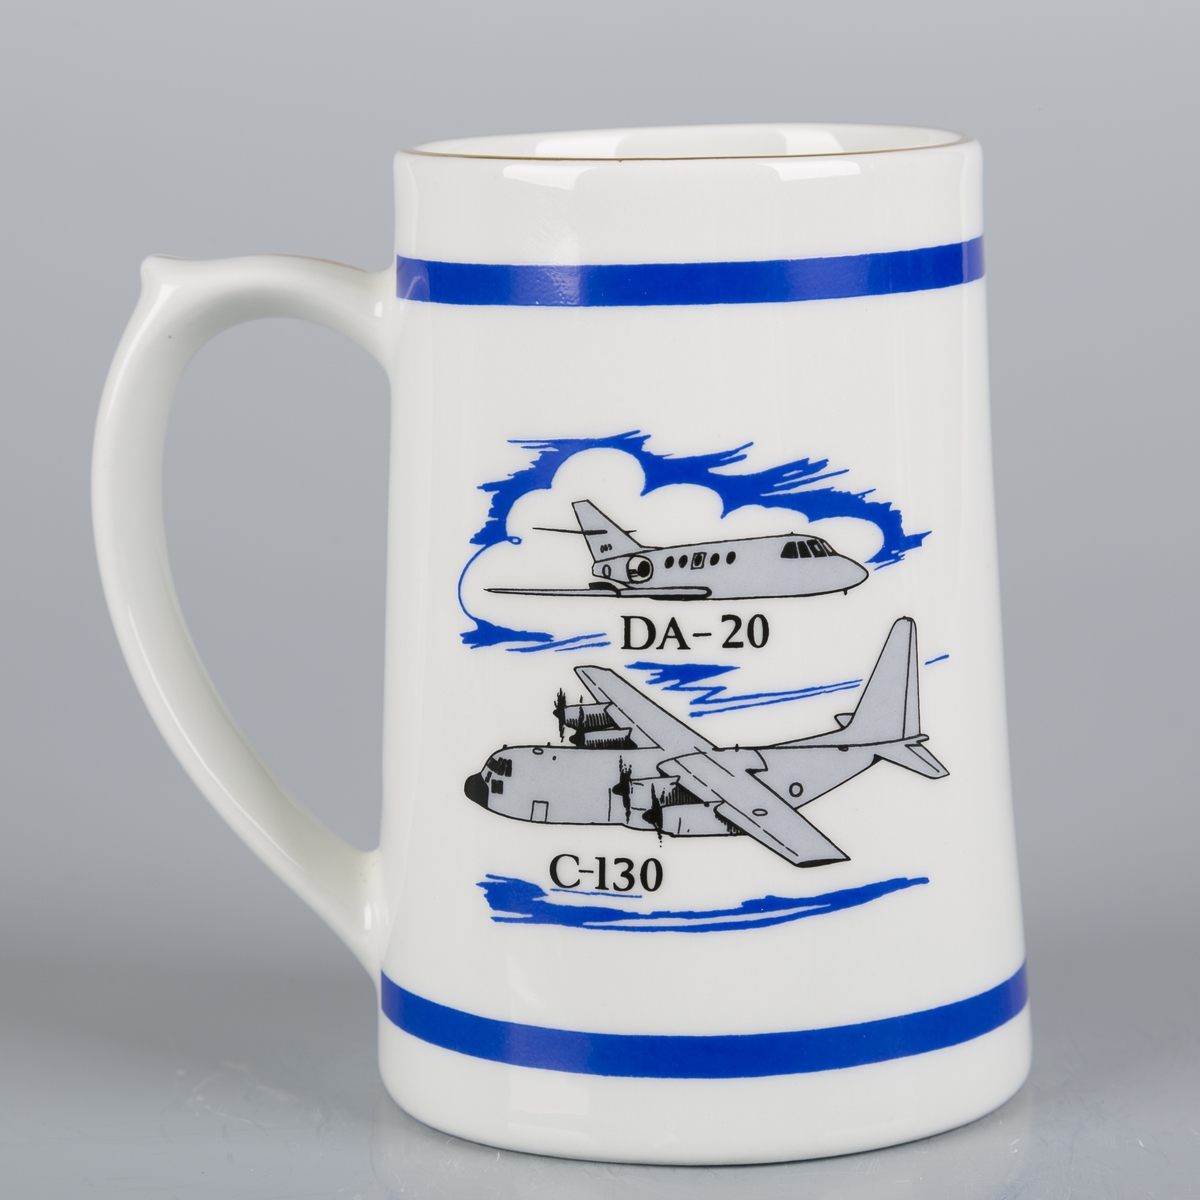 Krus med hank. Kronet logo. Bjelke øverst og nederst. Tegning av DA-20 og C-130.